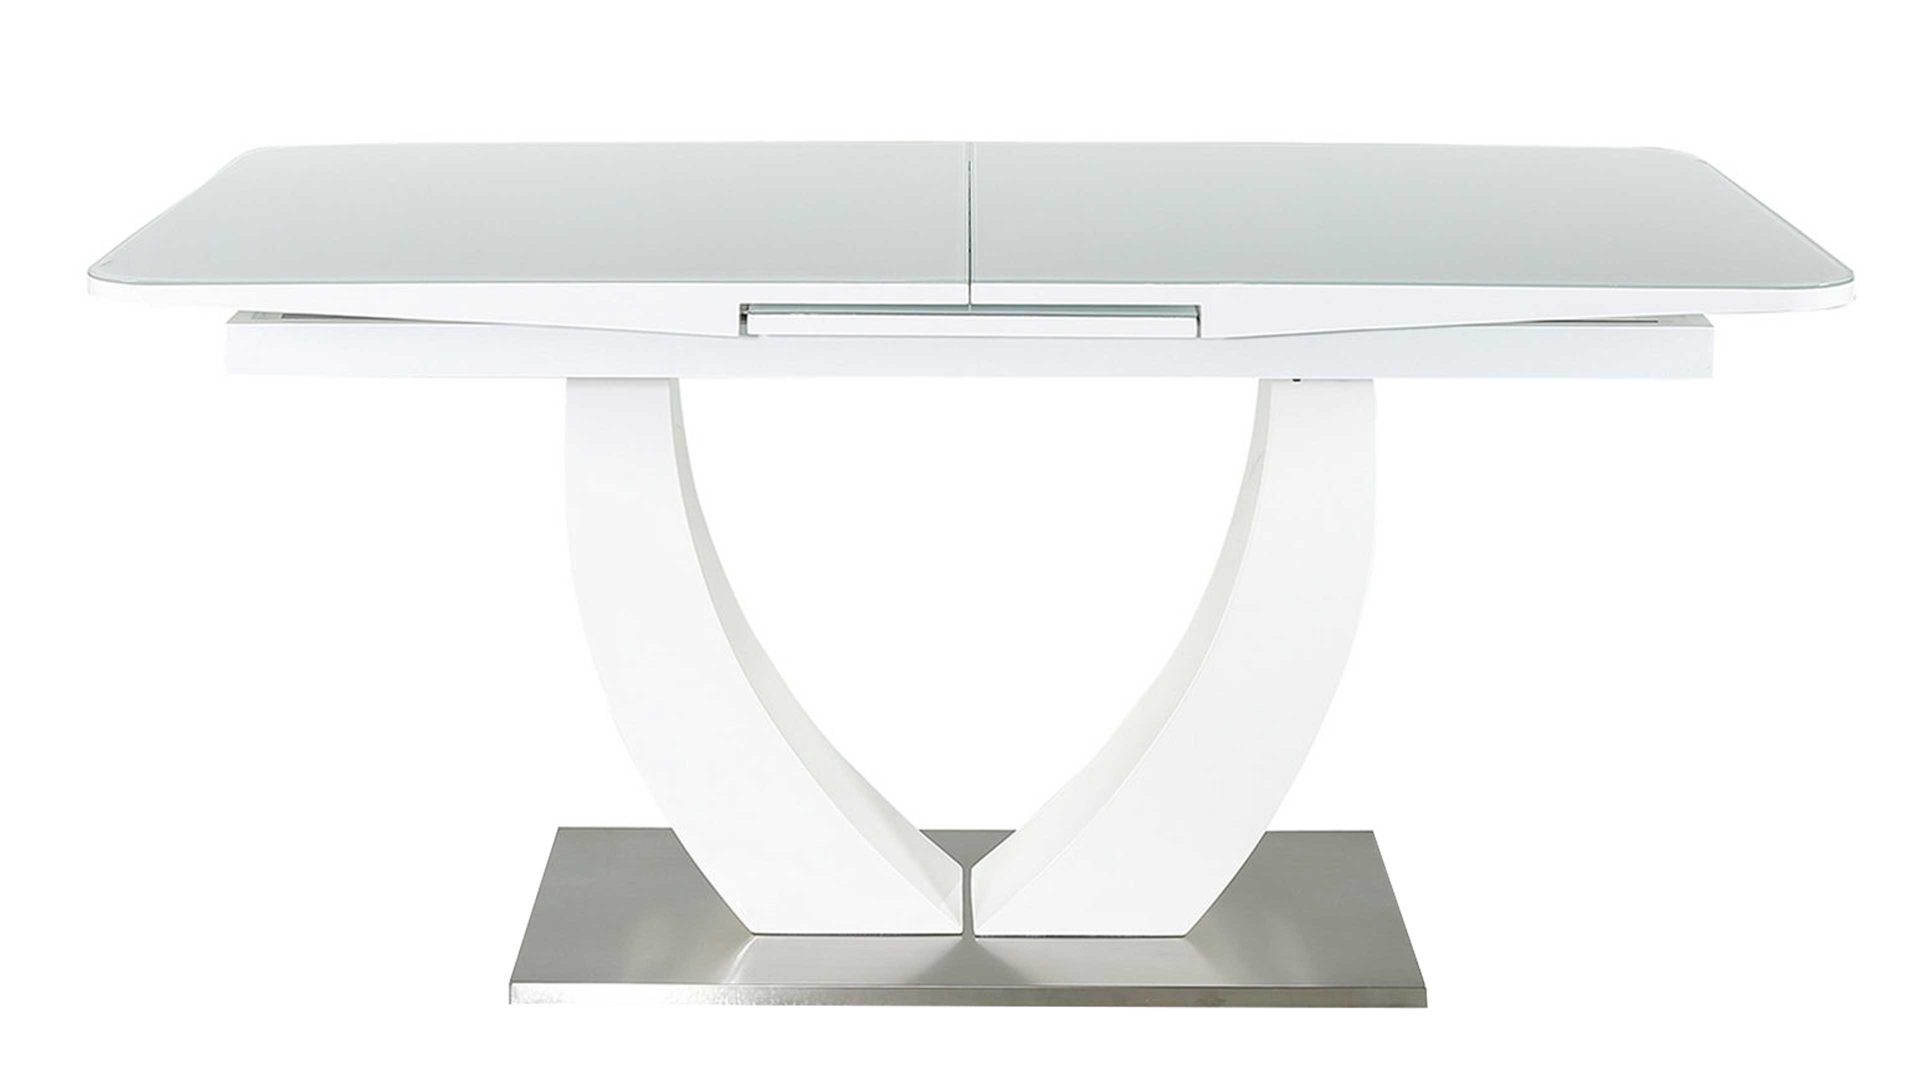 Auszugtisch Pro.com aus Glas in Weiß Ausziehtisch bzw. Esstisch Weißglas & weiße Hochglanzoberflächen, Edelstahl – ca. 160 - 200 x 90 cm